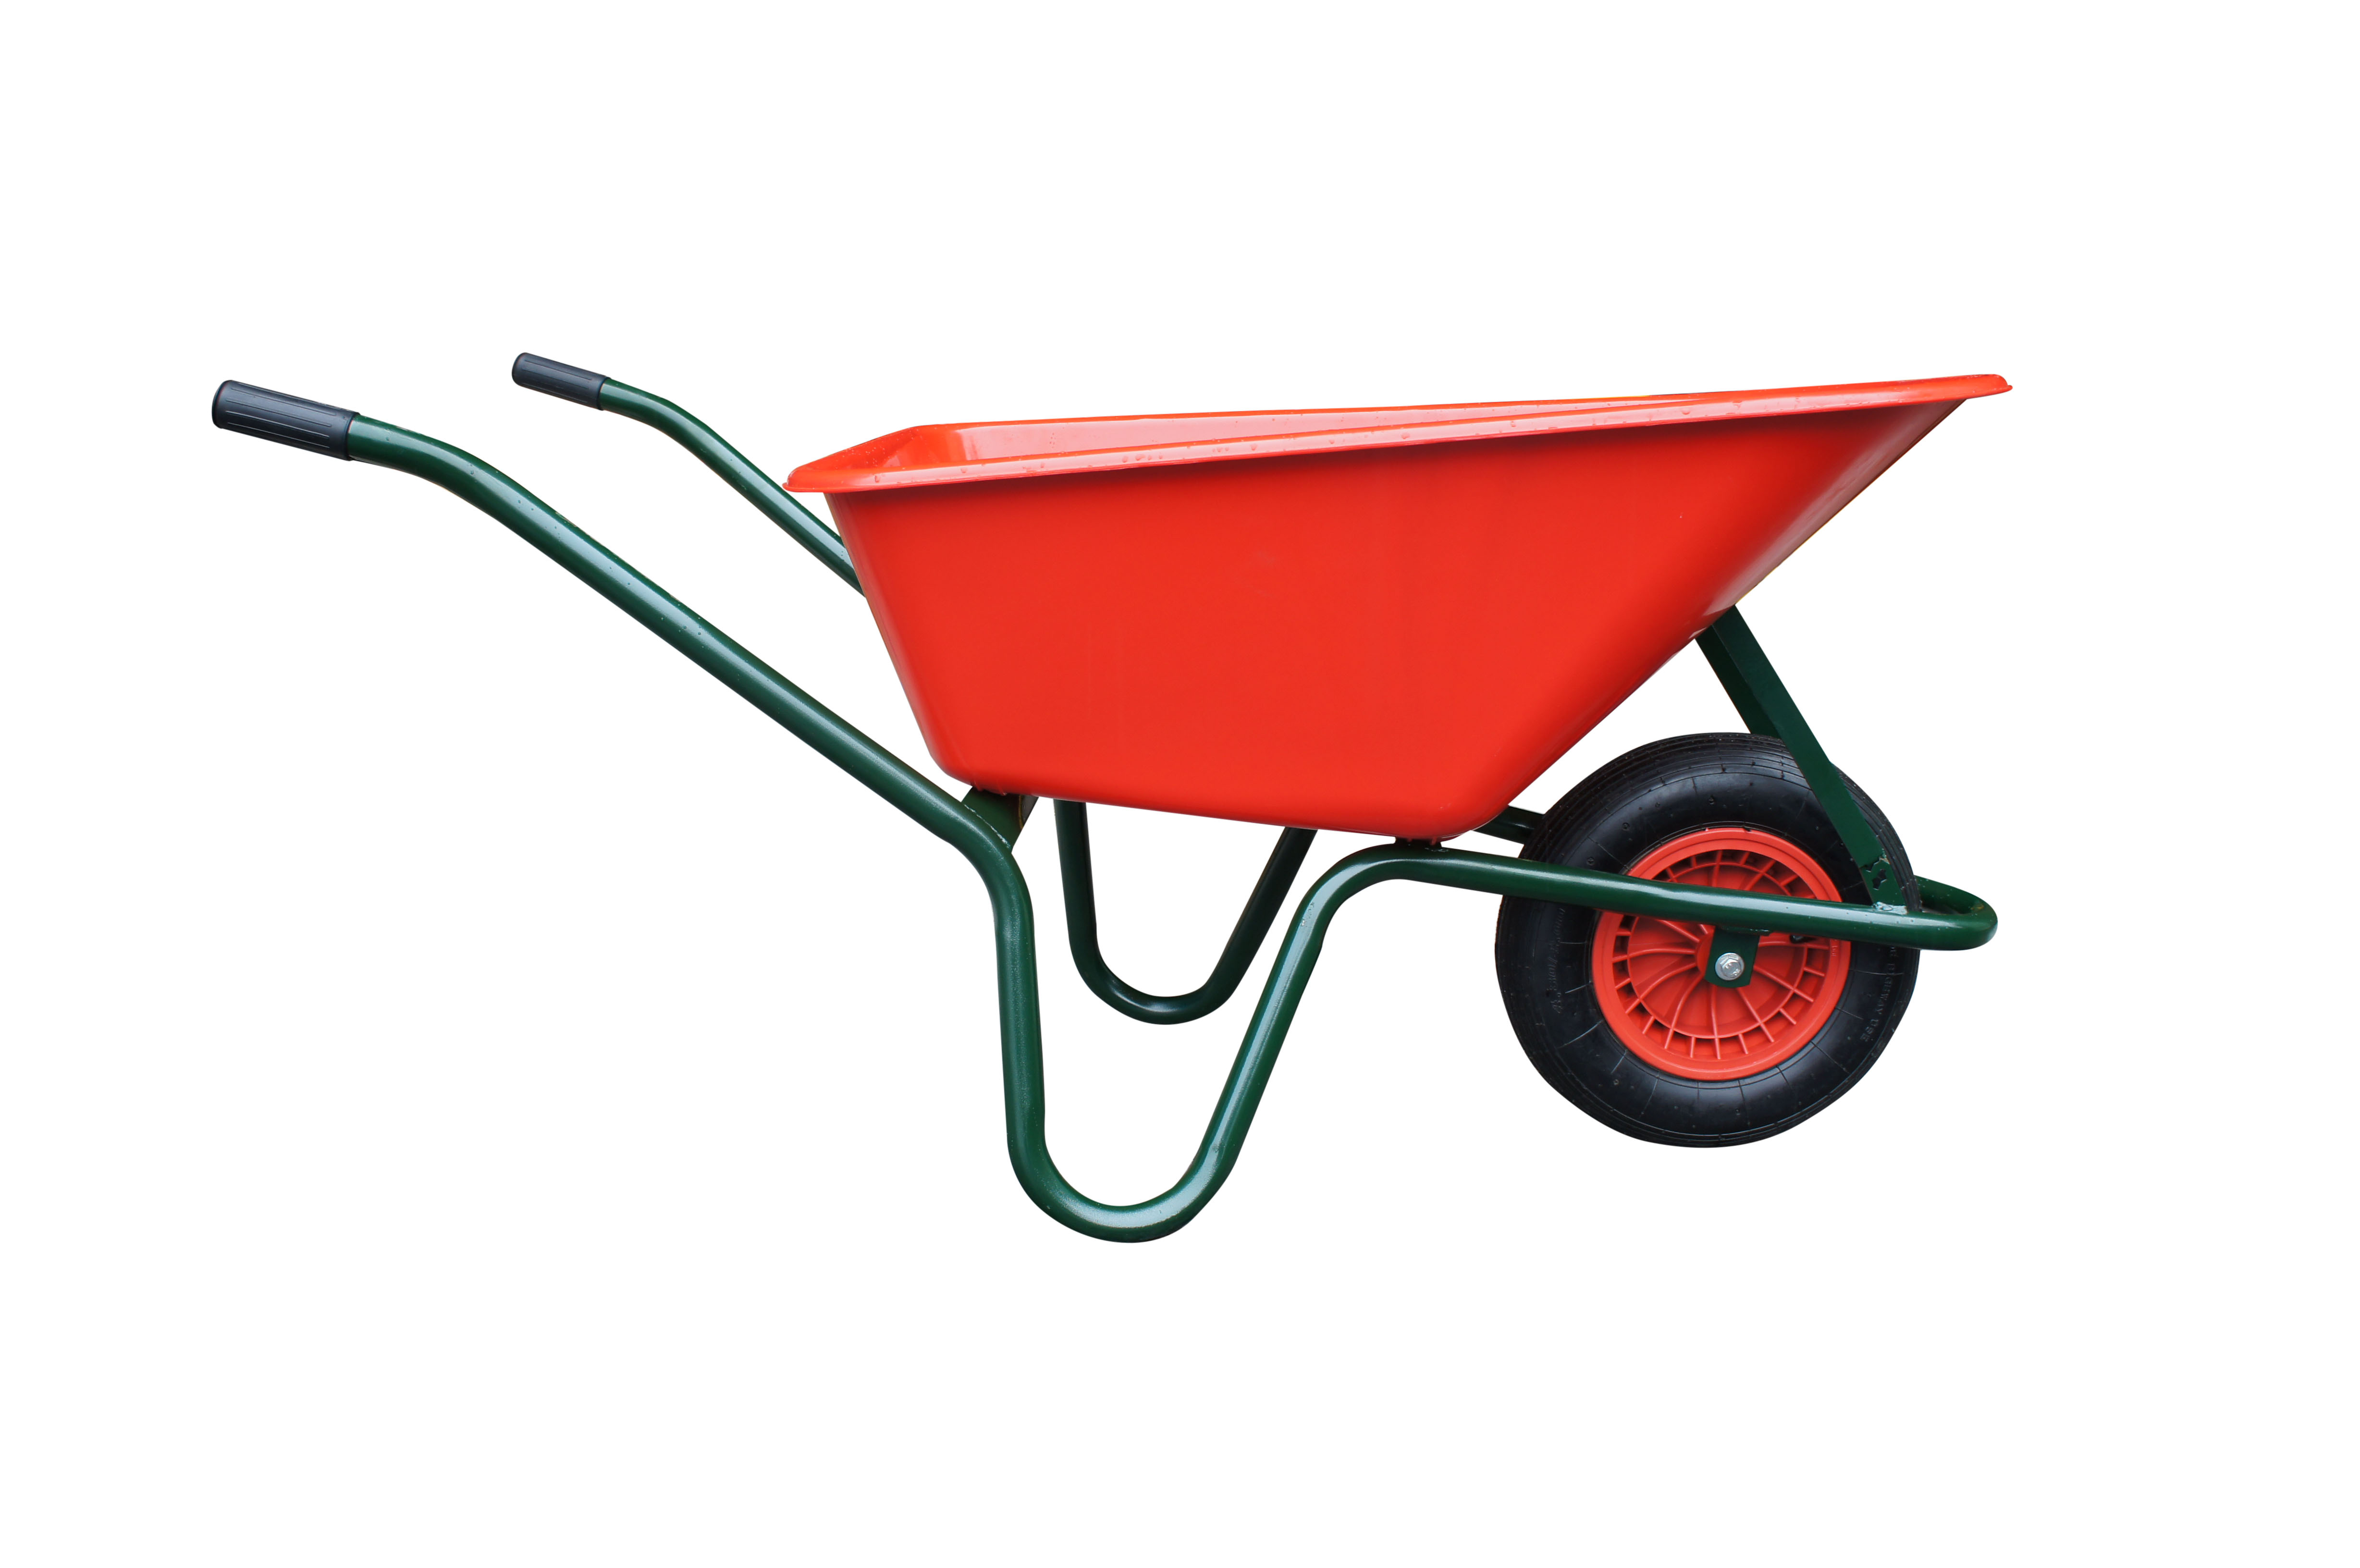 kolečko LIVEX 100 l, kolo nafukovací, rozložené - plastová korba červená, nosnost 100 kg